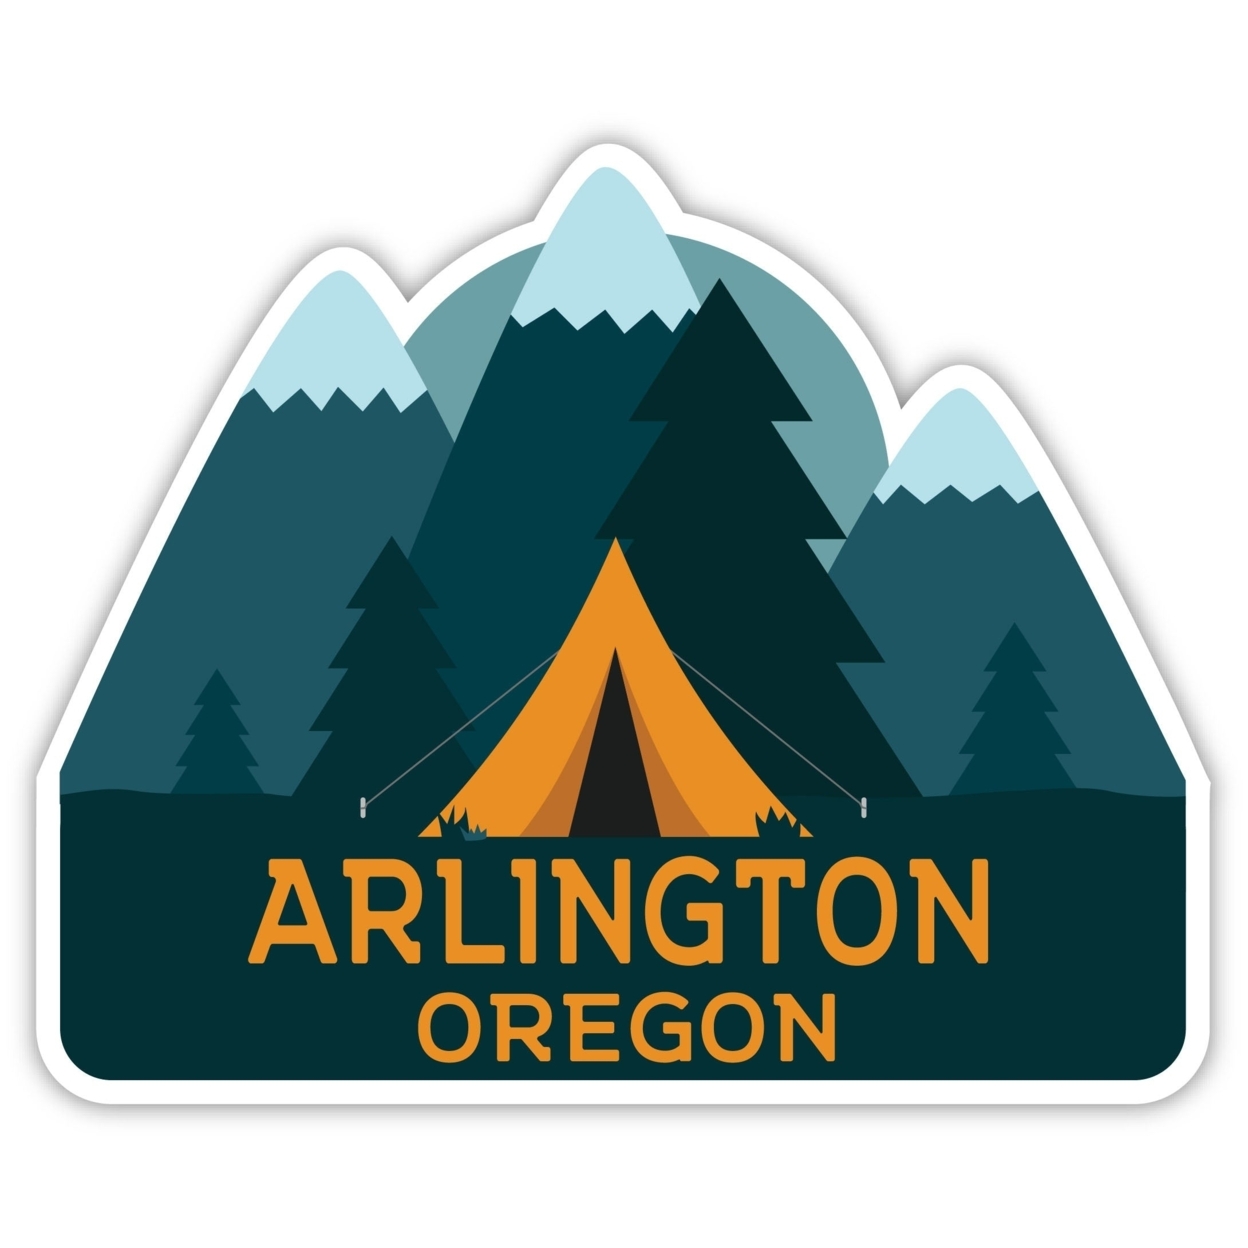 Arlington Oregon Souvenir Decorative Stickers (Choose Theme And Size) - 4-Pack, 10-Inch, Tent